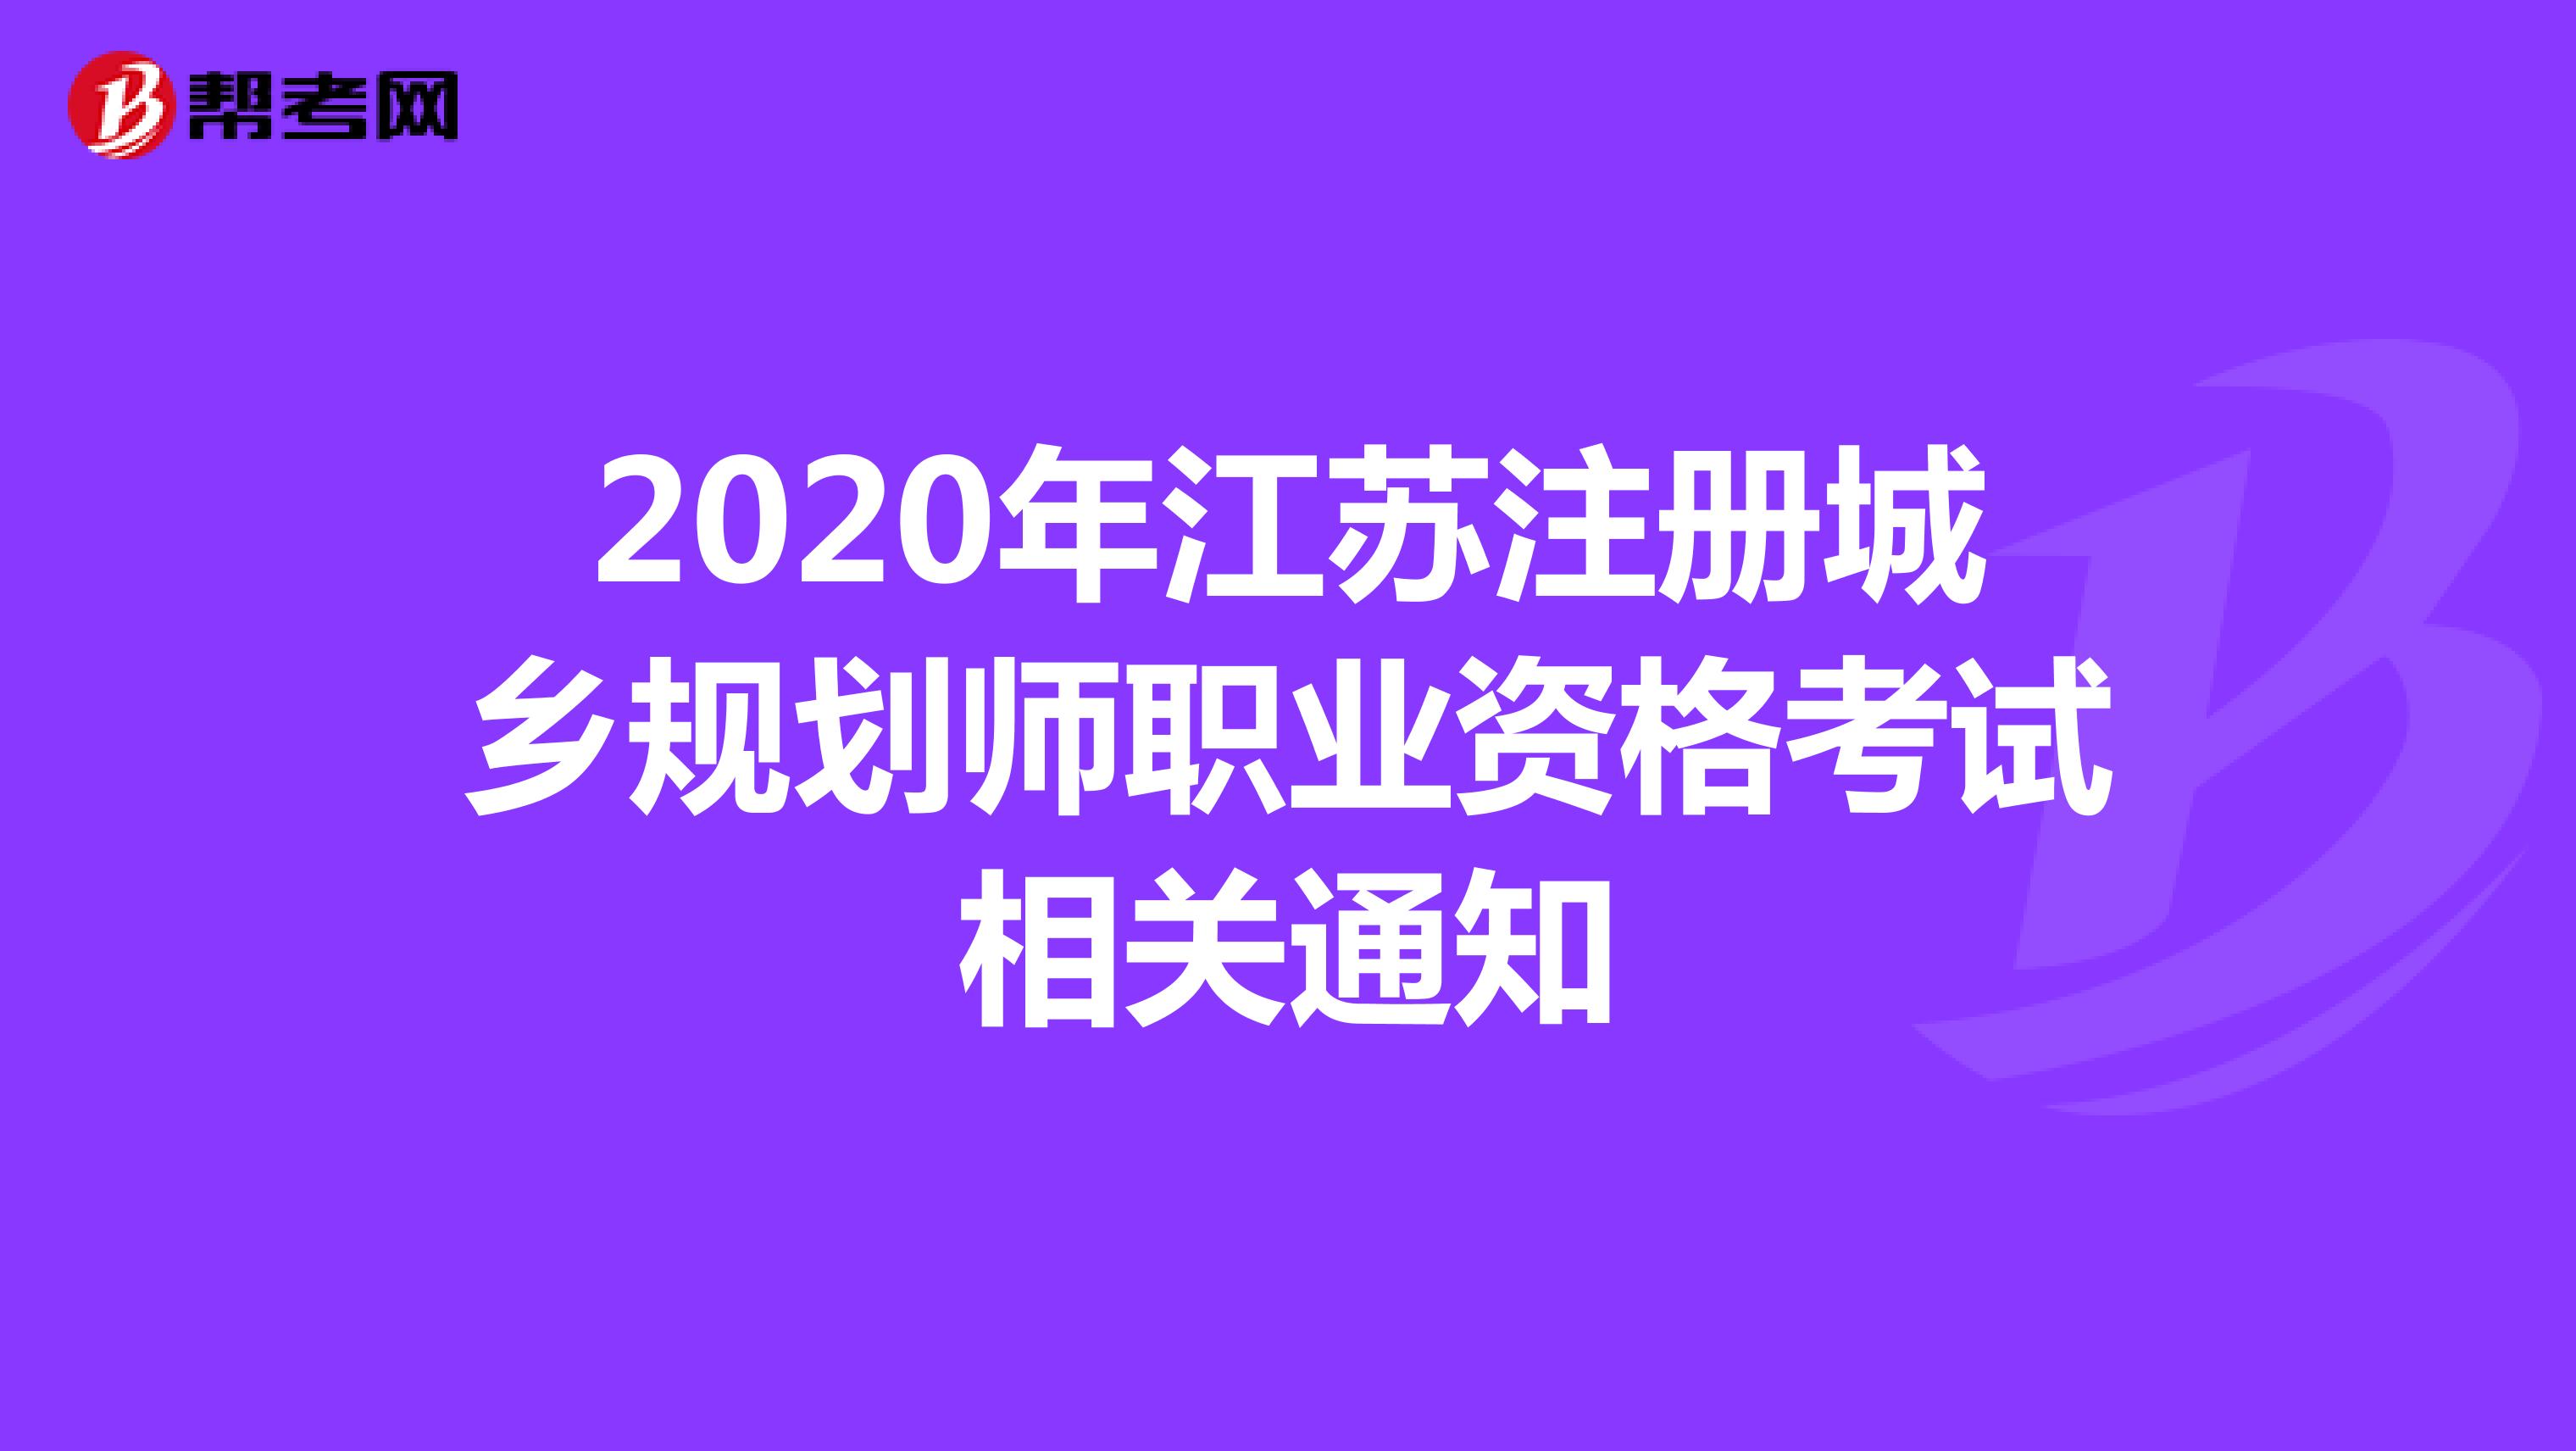 2020年江苏注册城乡规划师职业资格考试相关通知